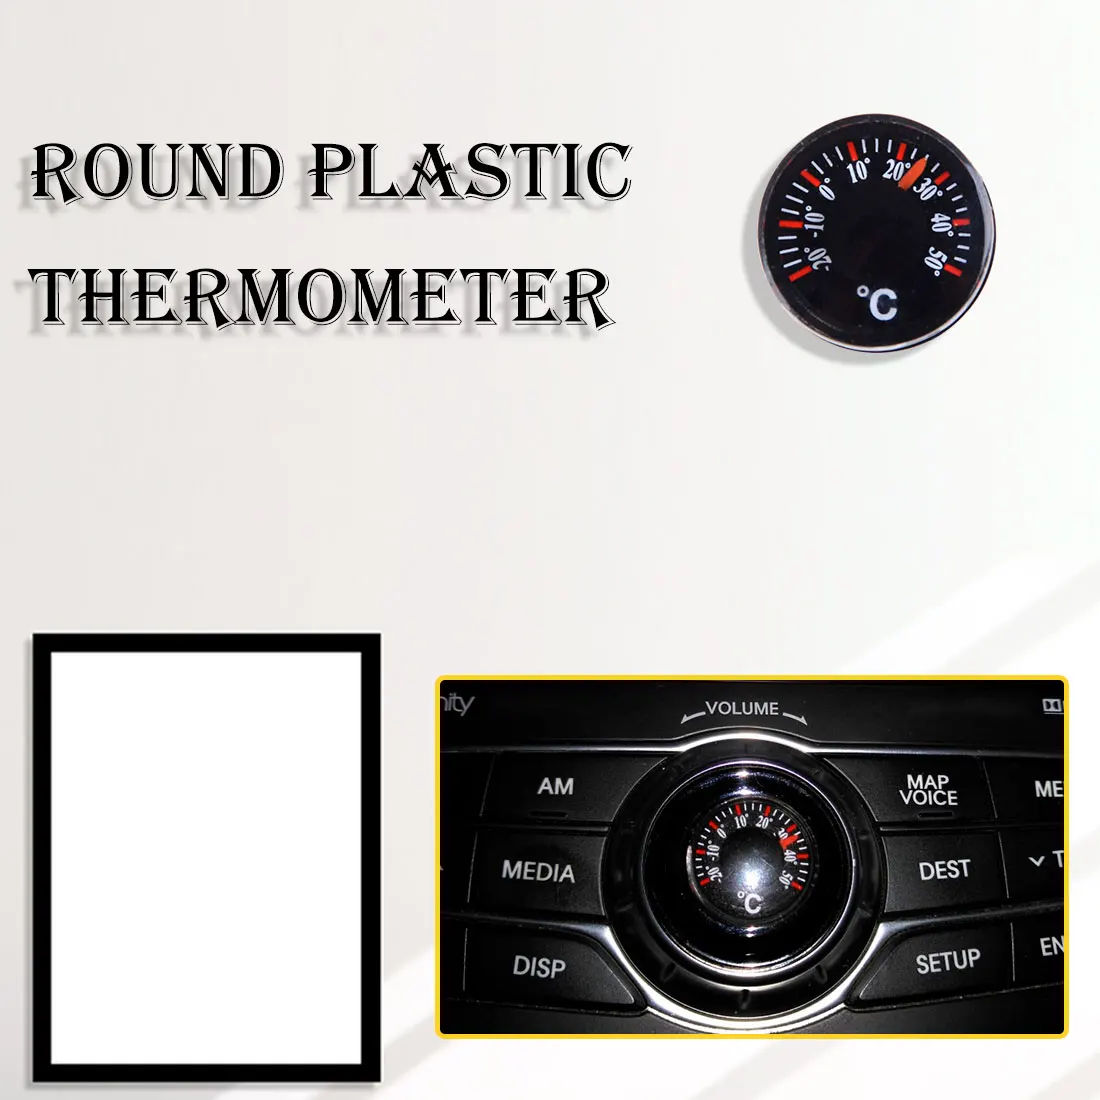 1 шт мини круглый для дома и улицы Водонепроницаемый Пластик круговой Диаметр 20 мм машинный термометр указатель градусов термометр Цельсий